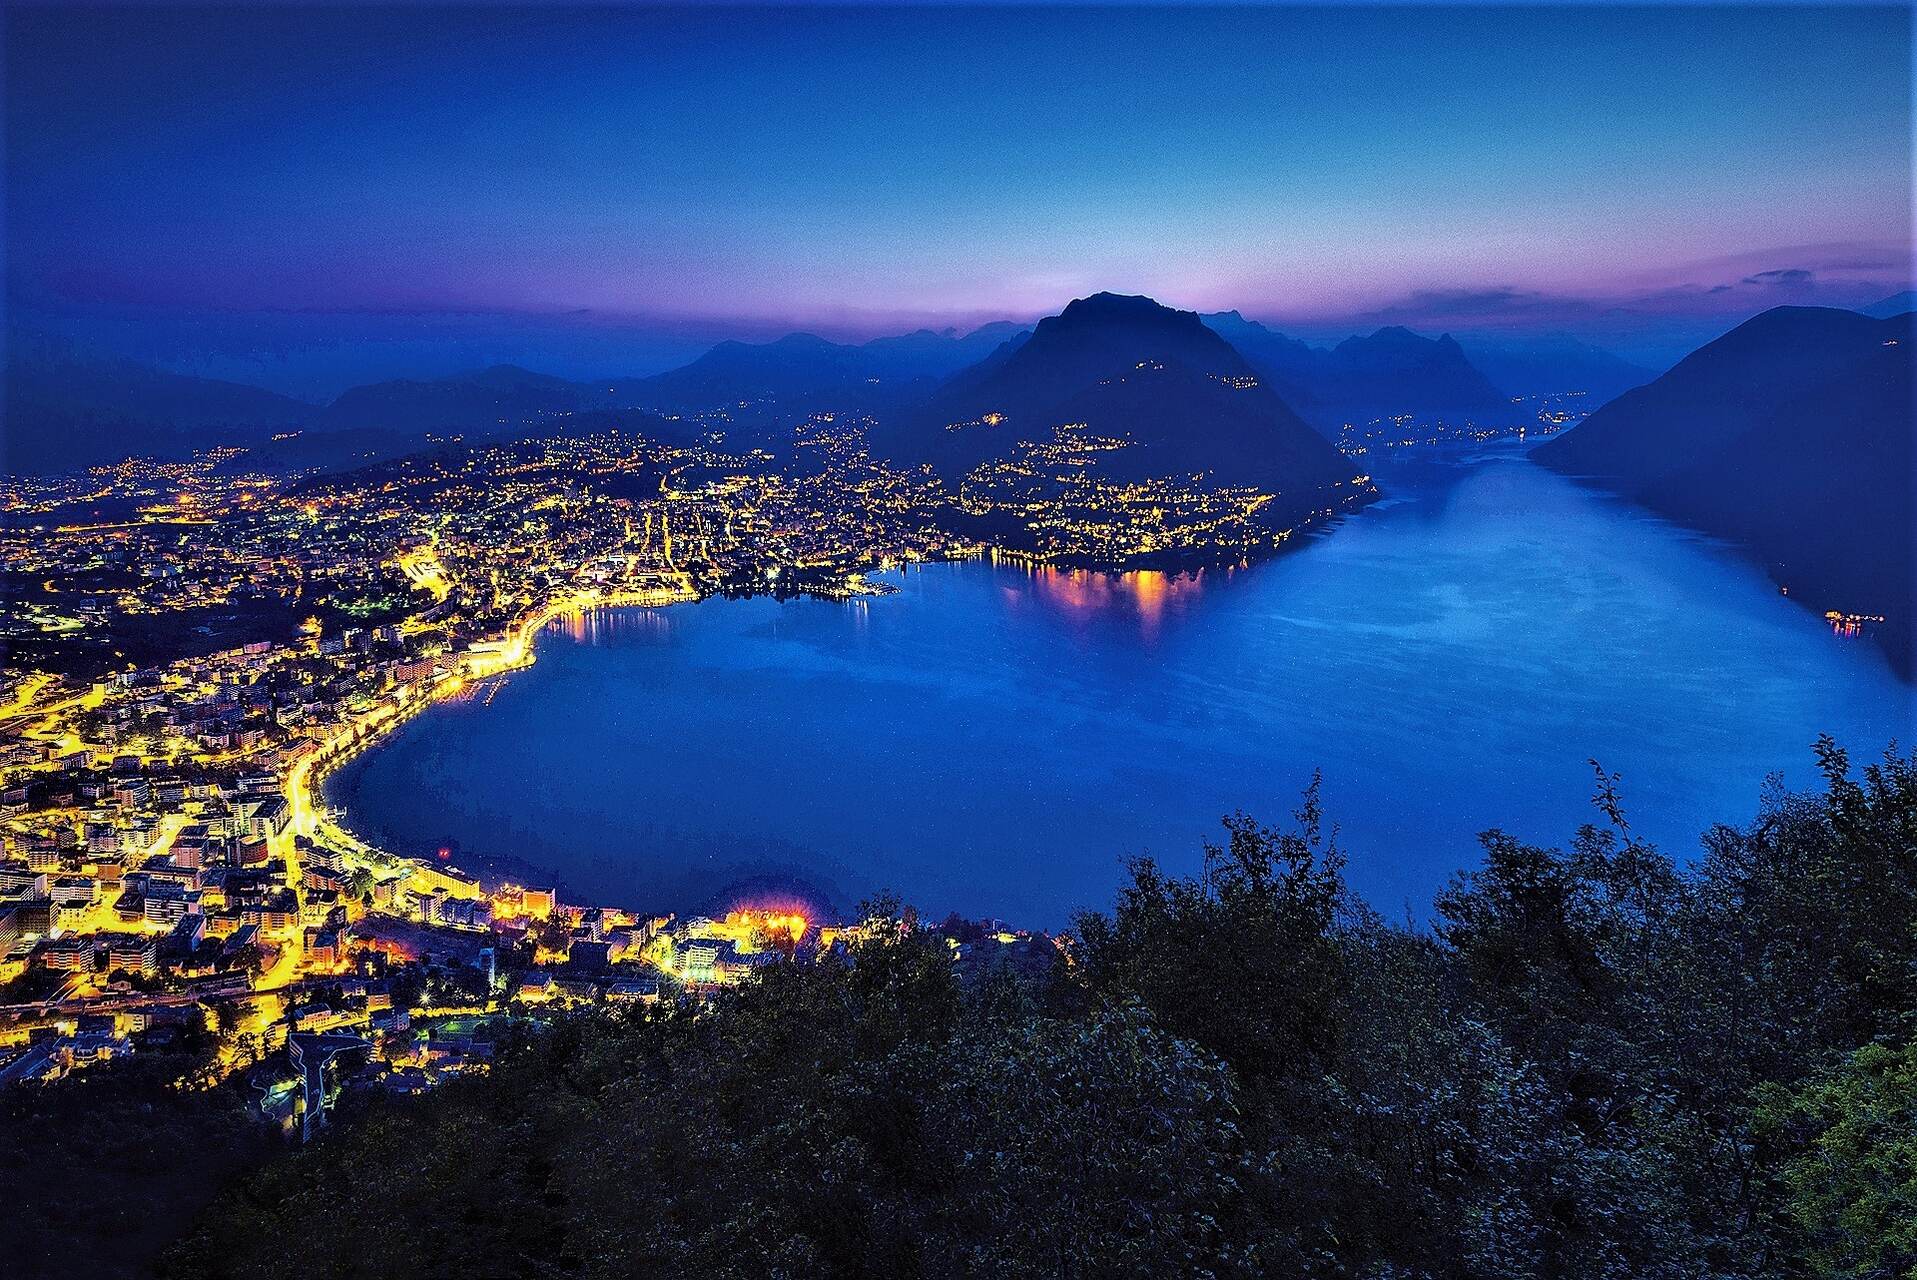 Ente Turistico del Lugano: the city of Lugano in the Canton of Ticino seen from Monte San Salvatore